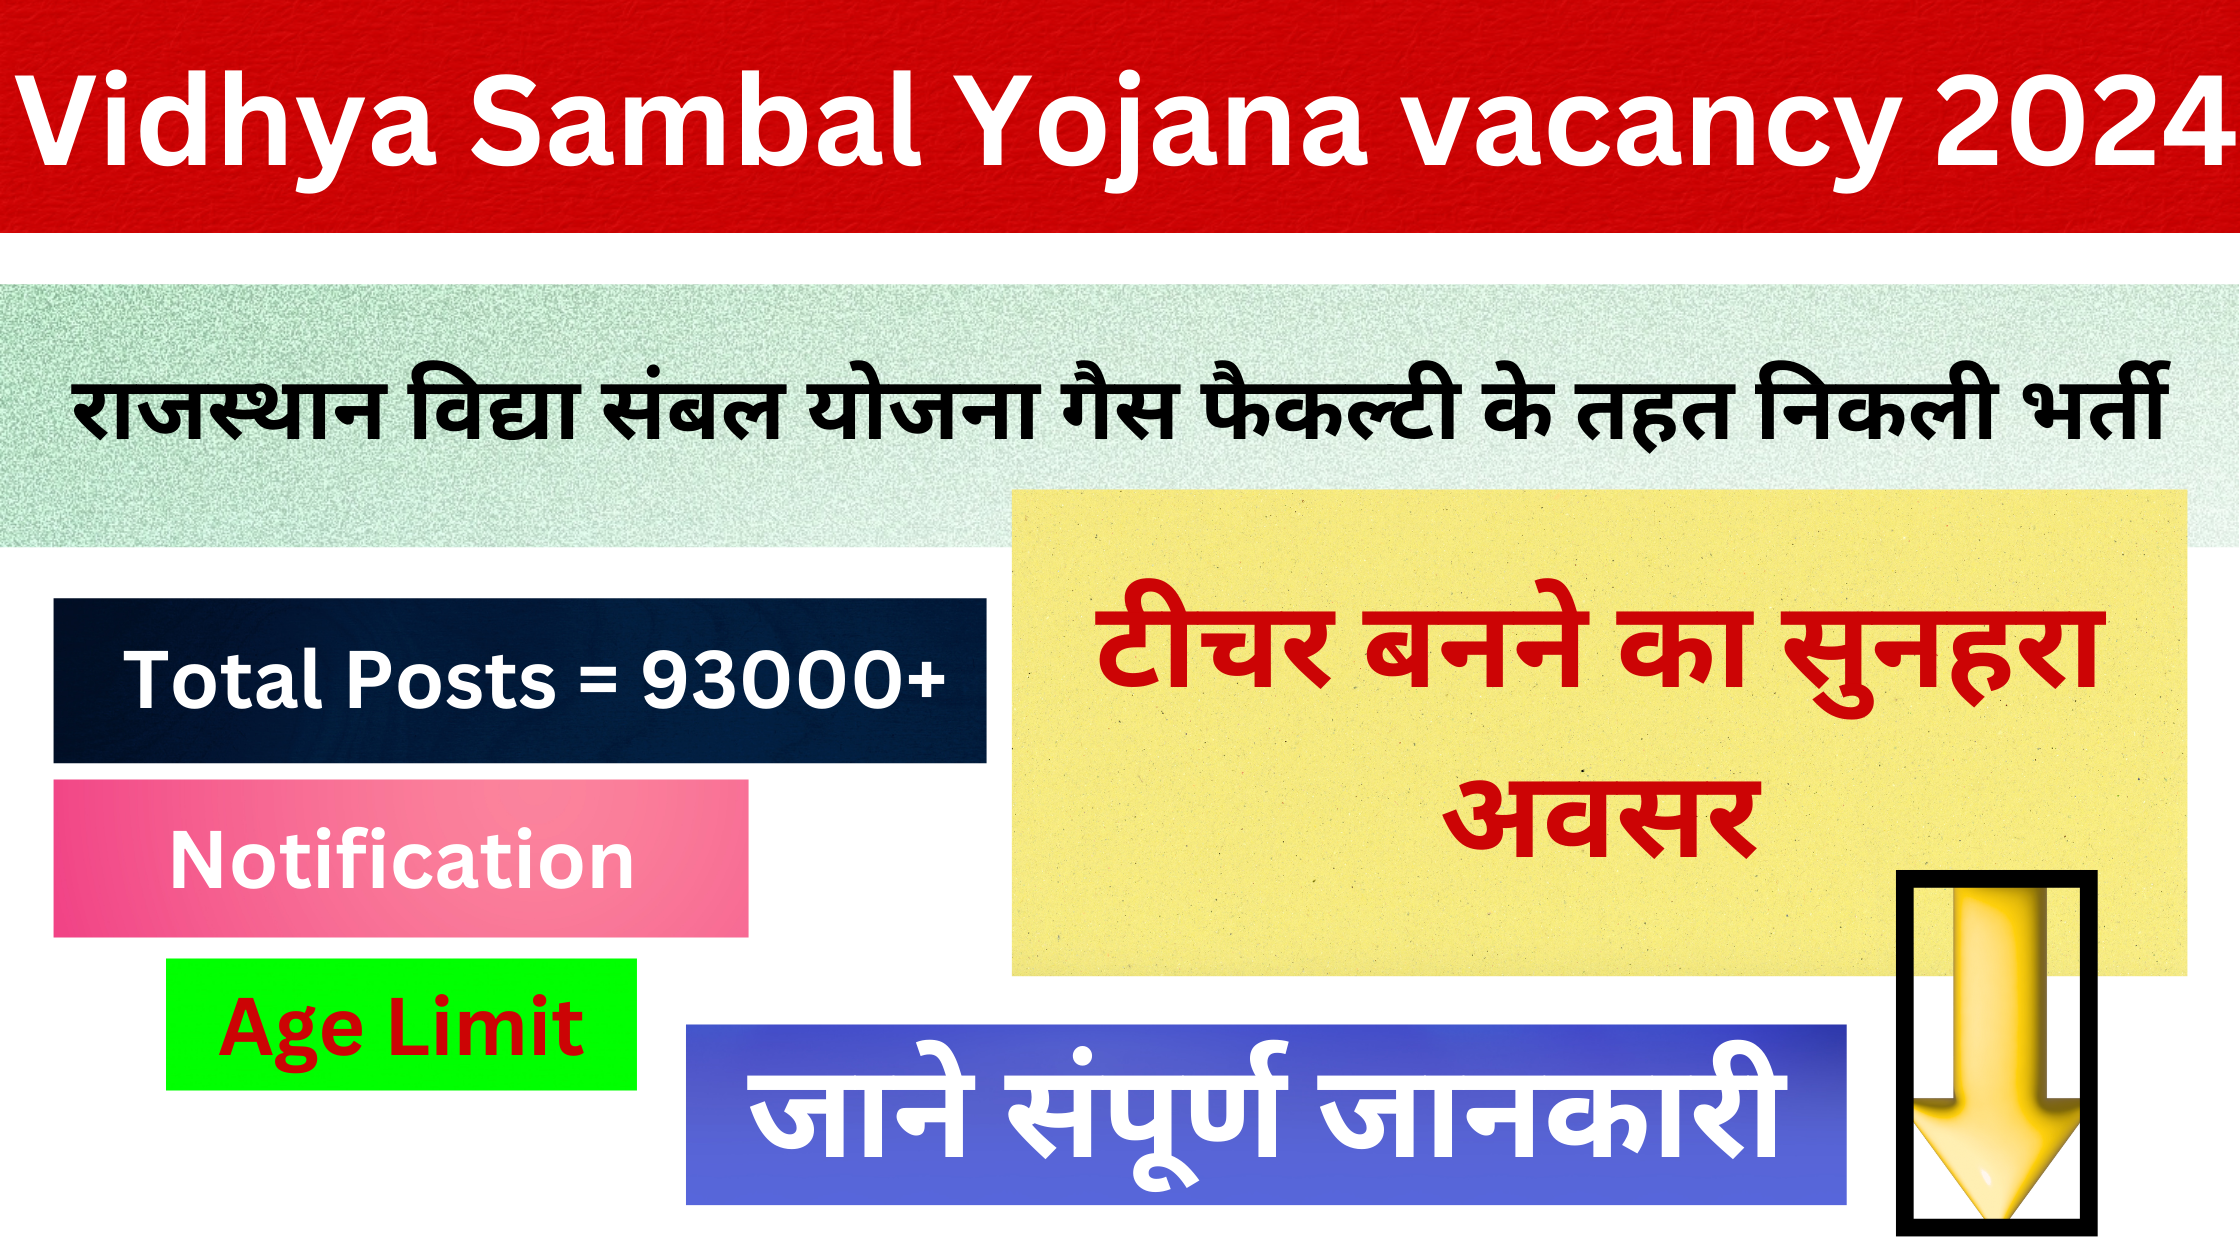 Vidhya Sambal Yojana vecancy 2024 | विद्या संबल योजना के तहत निकली भर्ती आवेदन शुरू यहां से जाने जानकारी